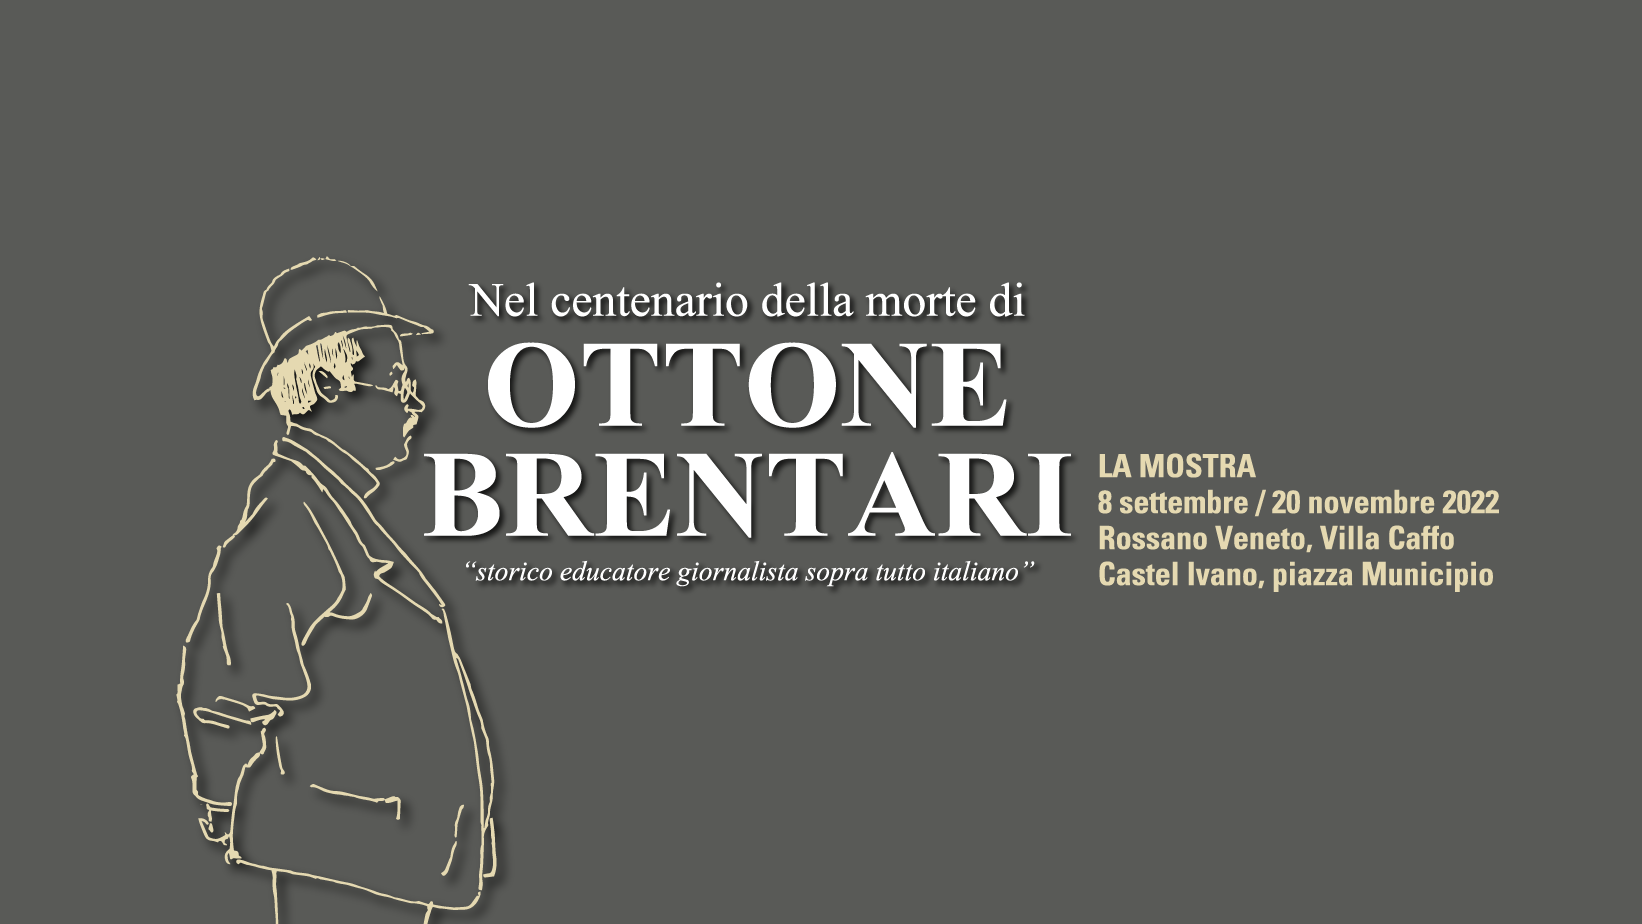 Nel centenario della morte di Ottone Brentari